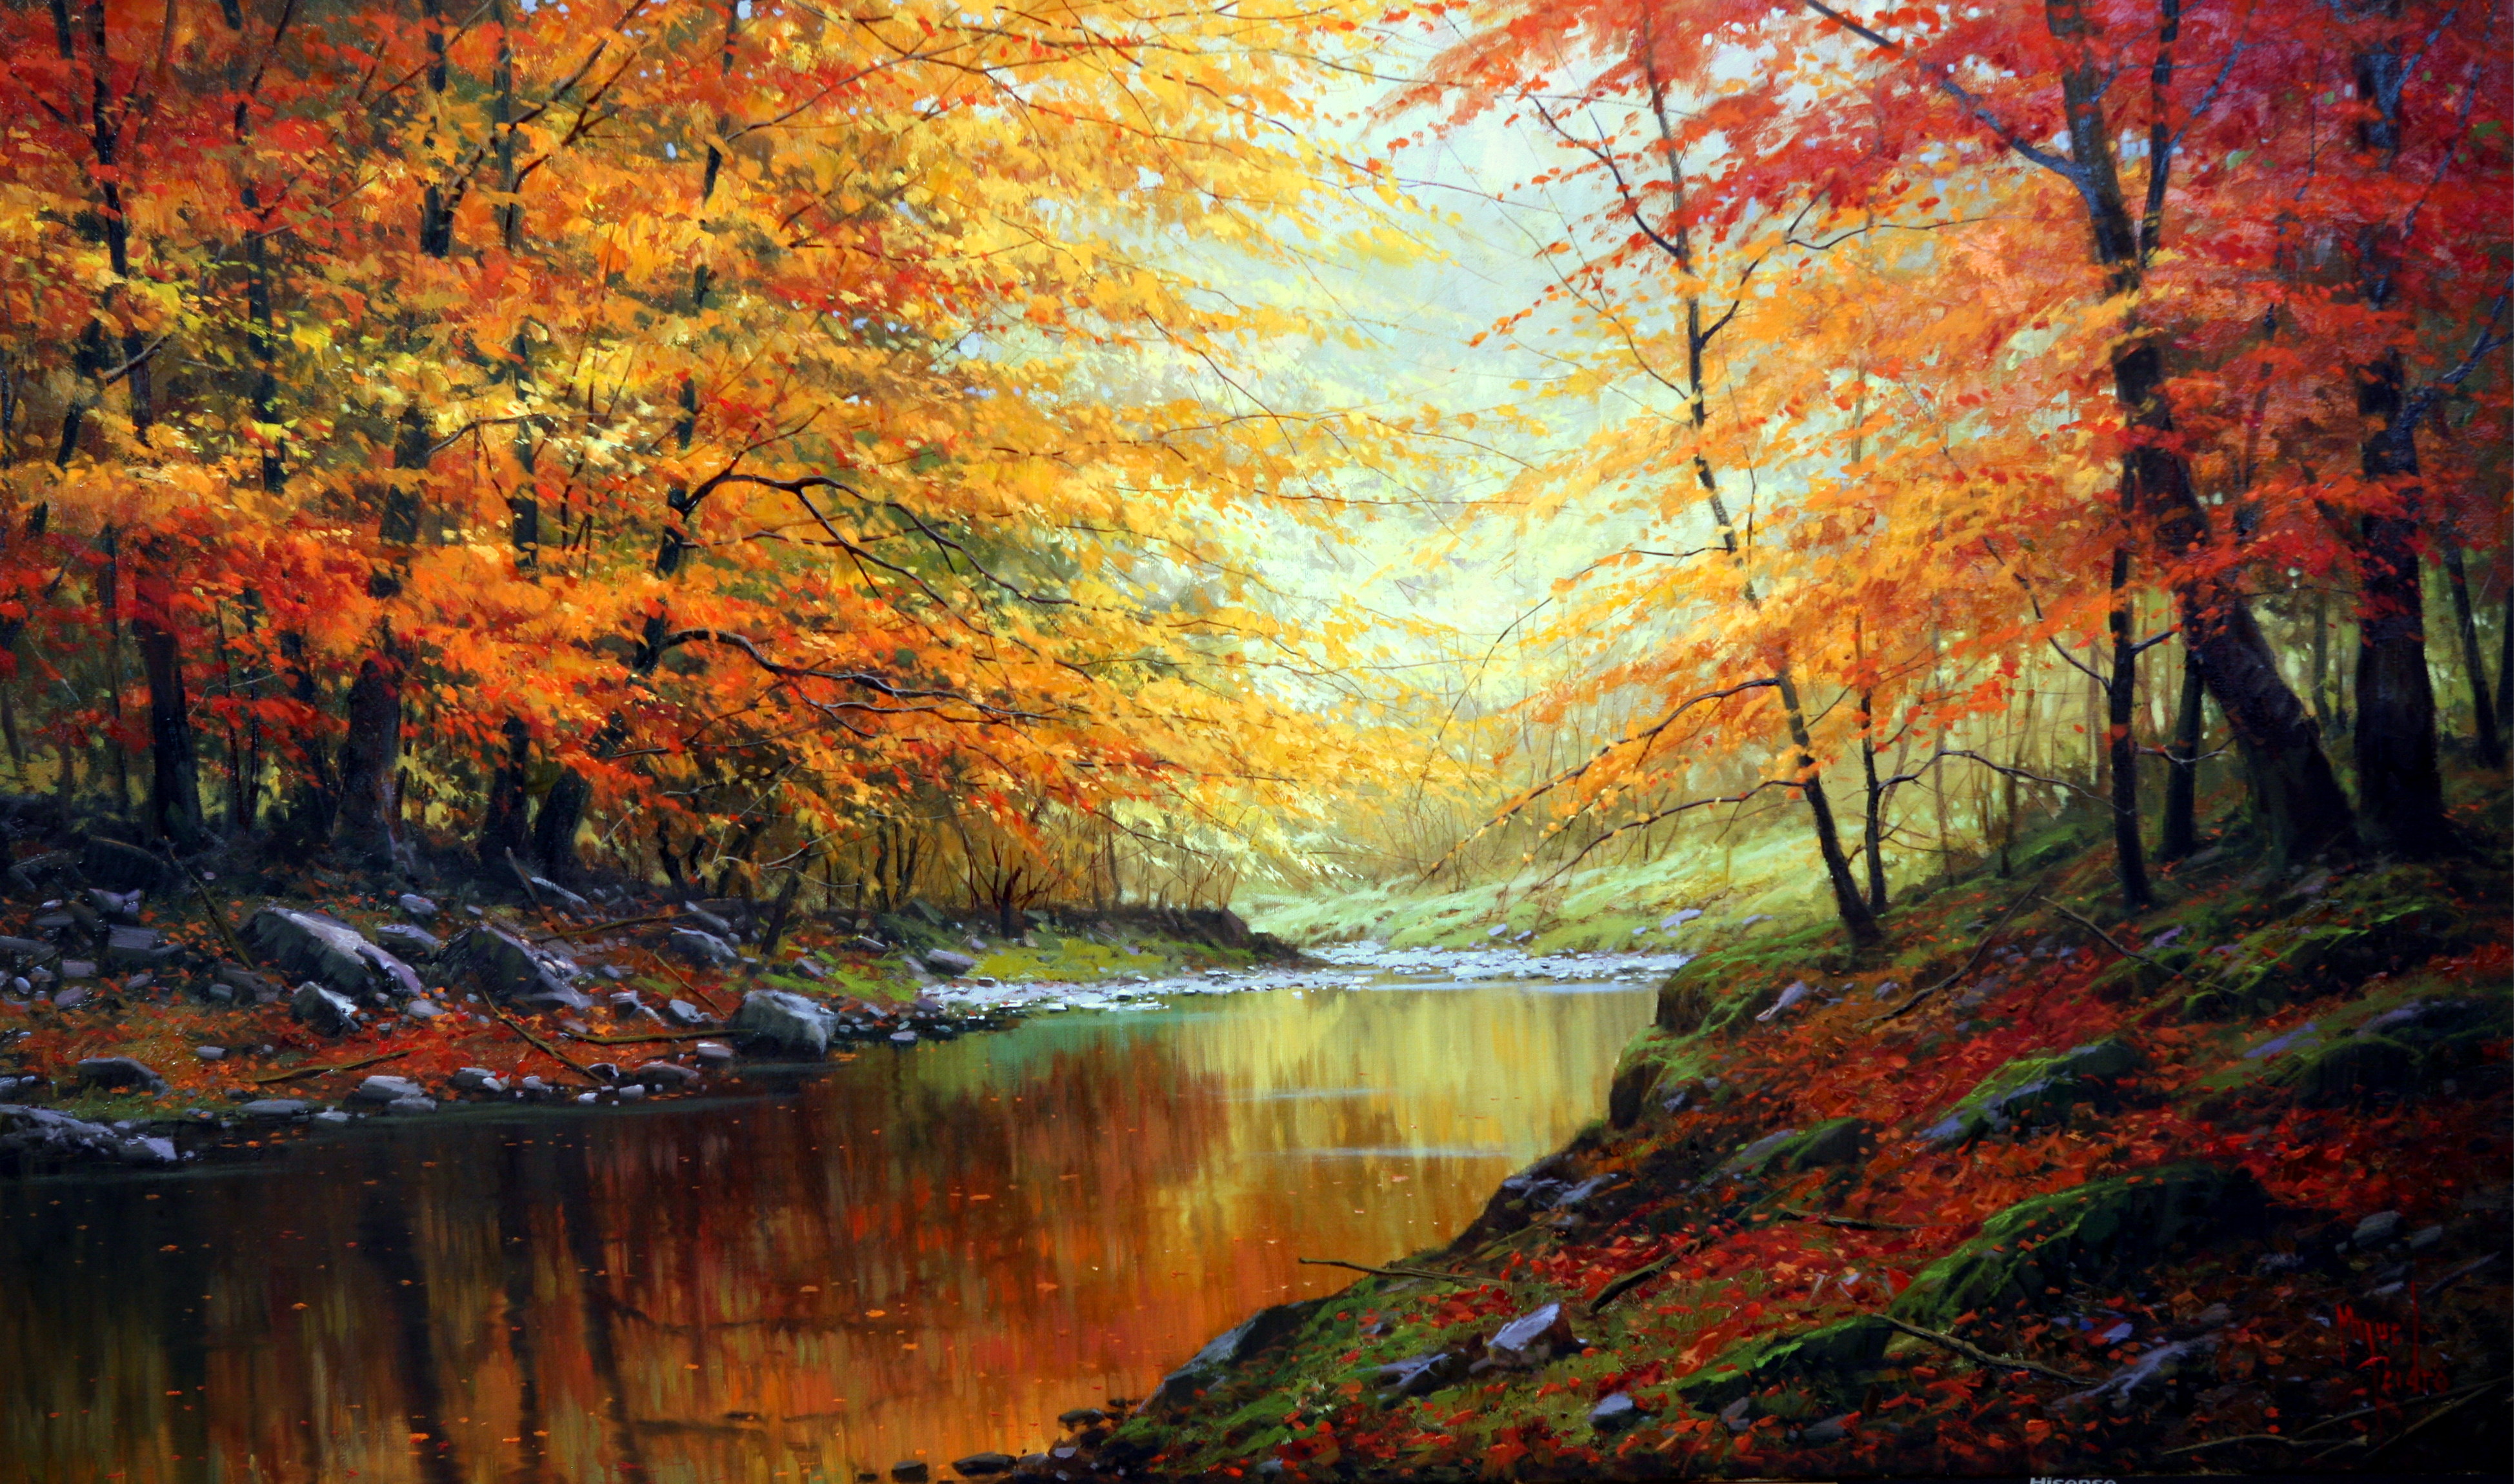 西班牙风景画大师米格尔佩德罗个人画展满屏对深秋的爱